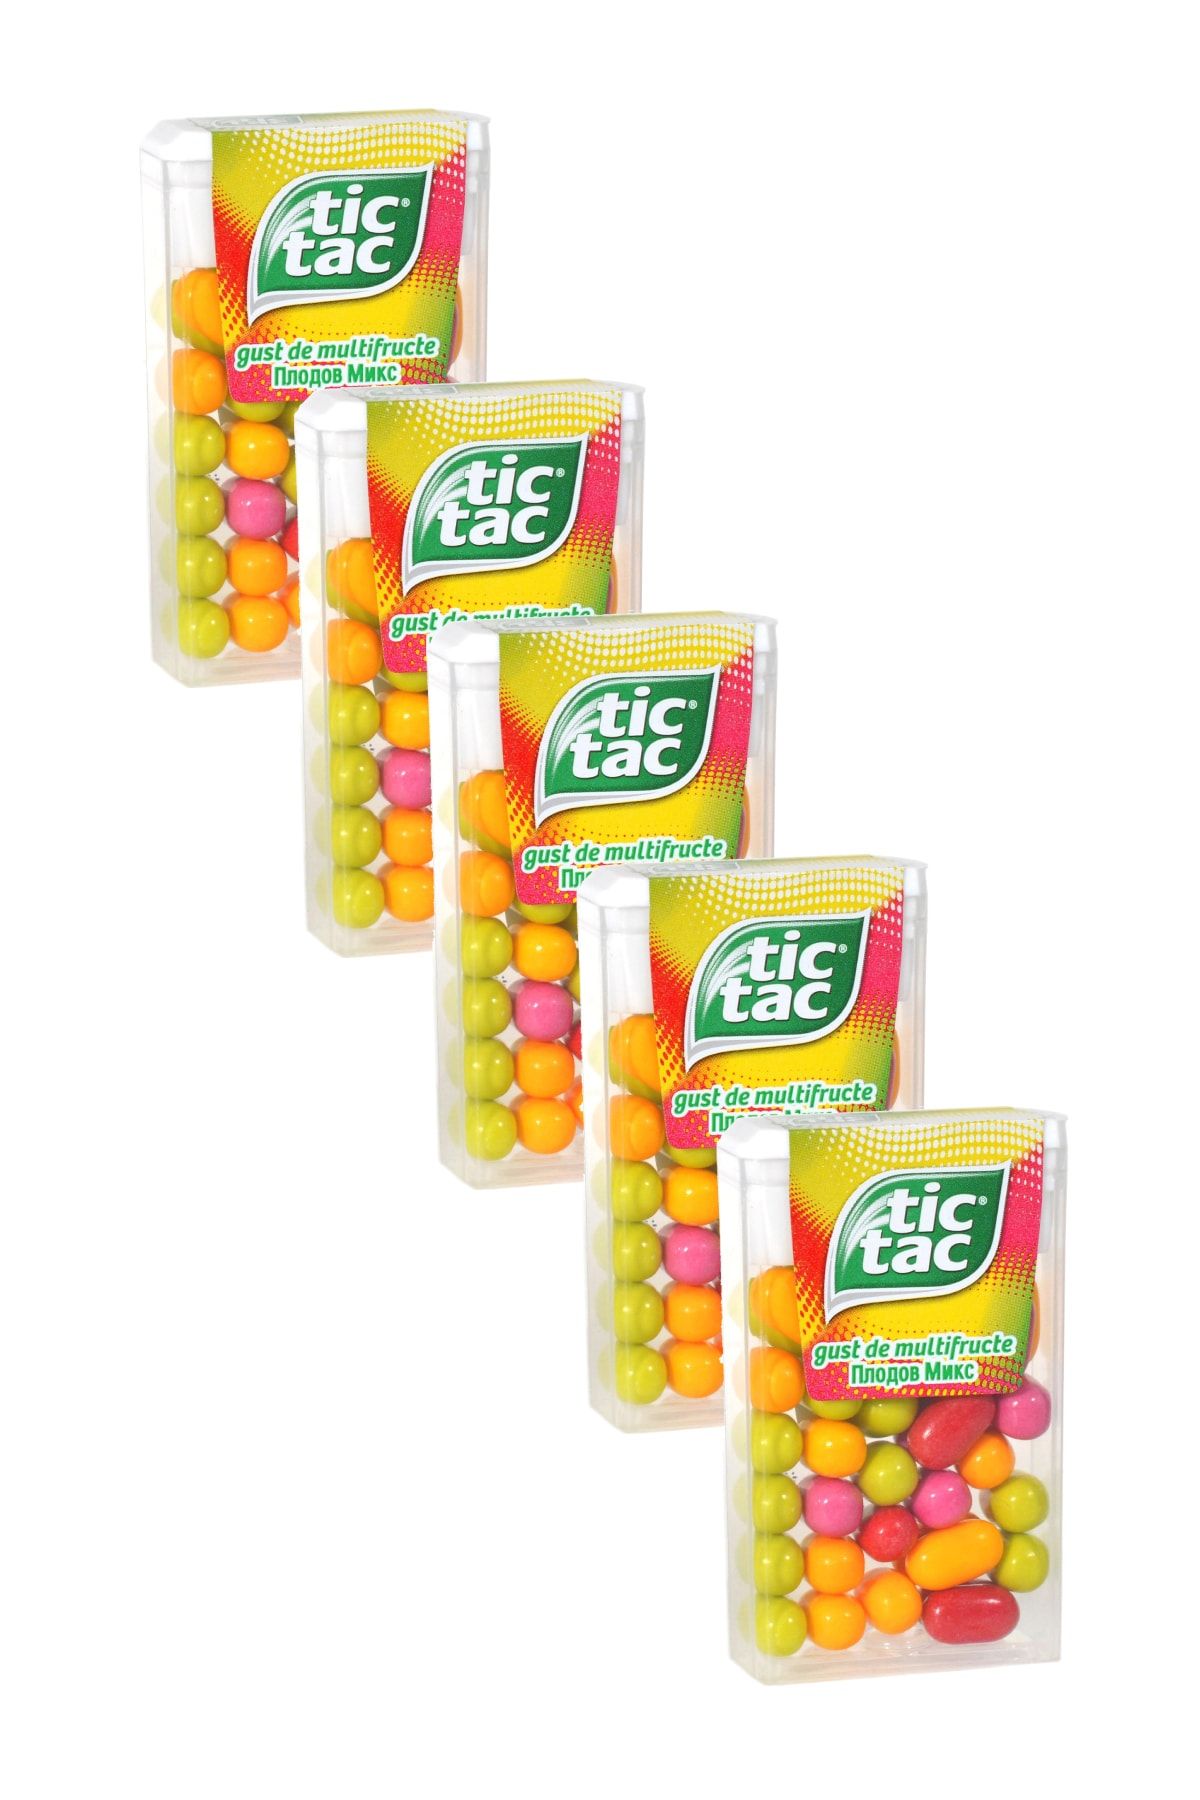 Tic Tac Karışık Meyveli Şeker 18 gr Özel Seri Mix Fruit Şekerleme x 5 Paket